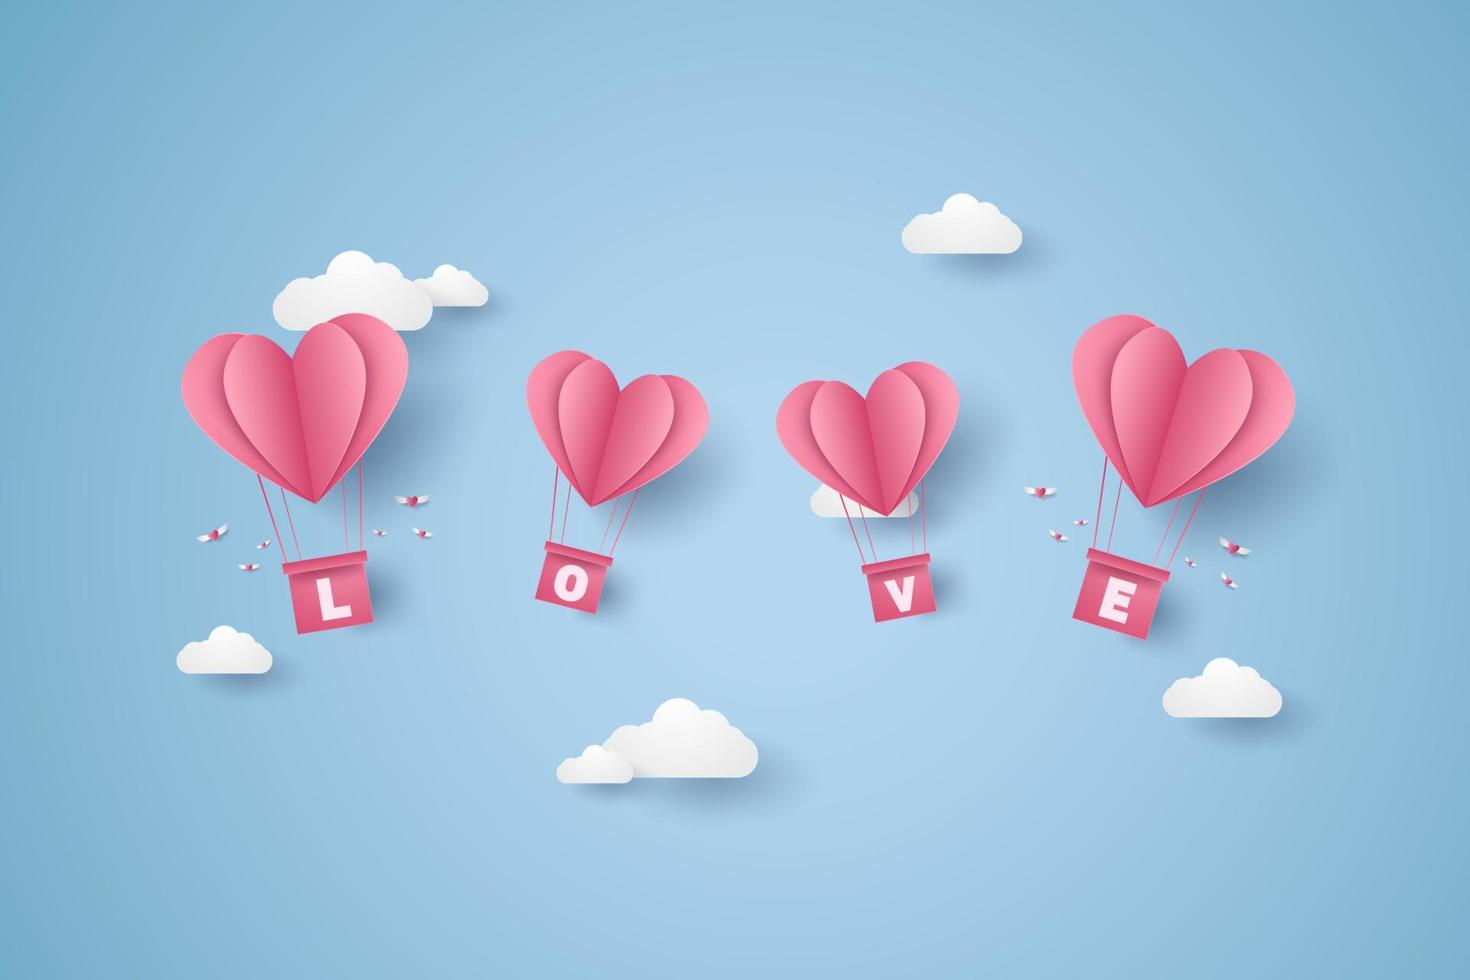 saint valentin, illustration de l'amour, ballons à air chaud coeur rose volant dans le ciel bleu, style art papier vecteur